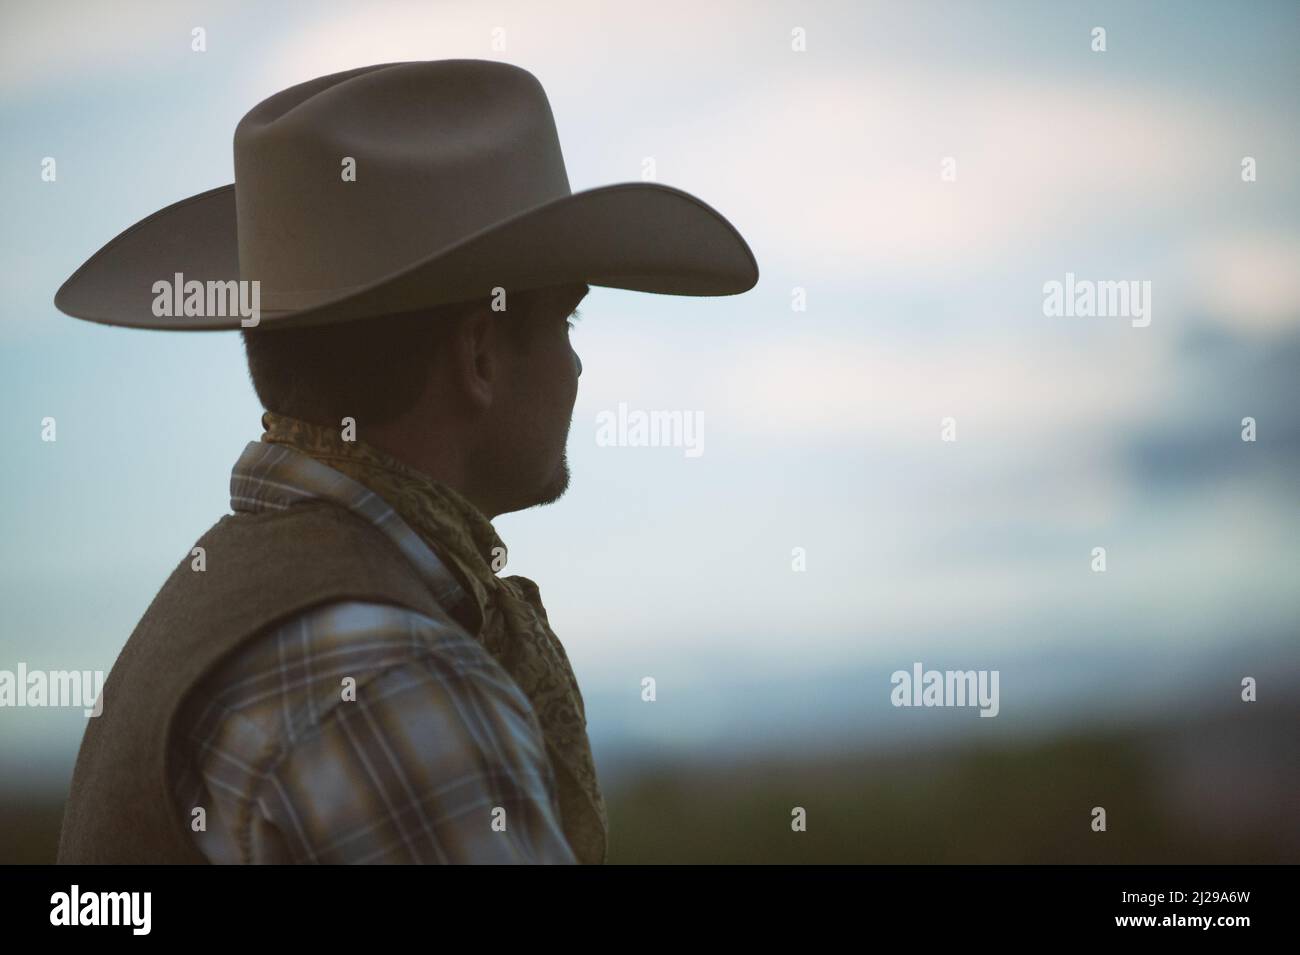 Ein hübscher Cowboy mit einem starken Profil, der eine Mütze im Stetson-Stil trägt, blickt in die Ferne. Cowboy-Profil. Marlboro Man. Cowboy von Wyoming. USA Stockfoto